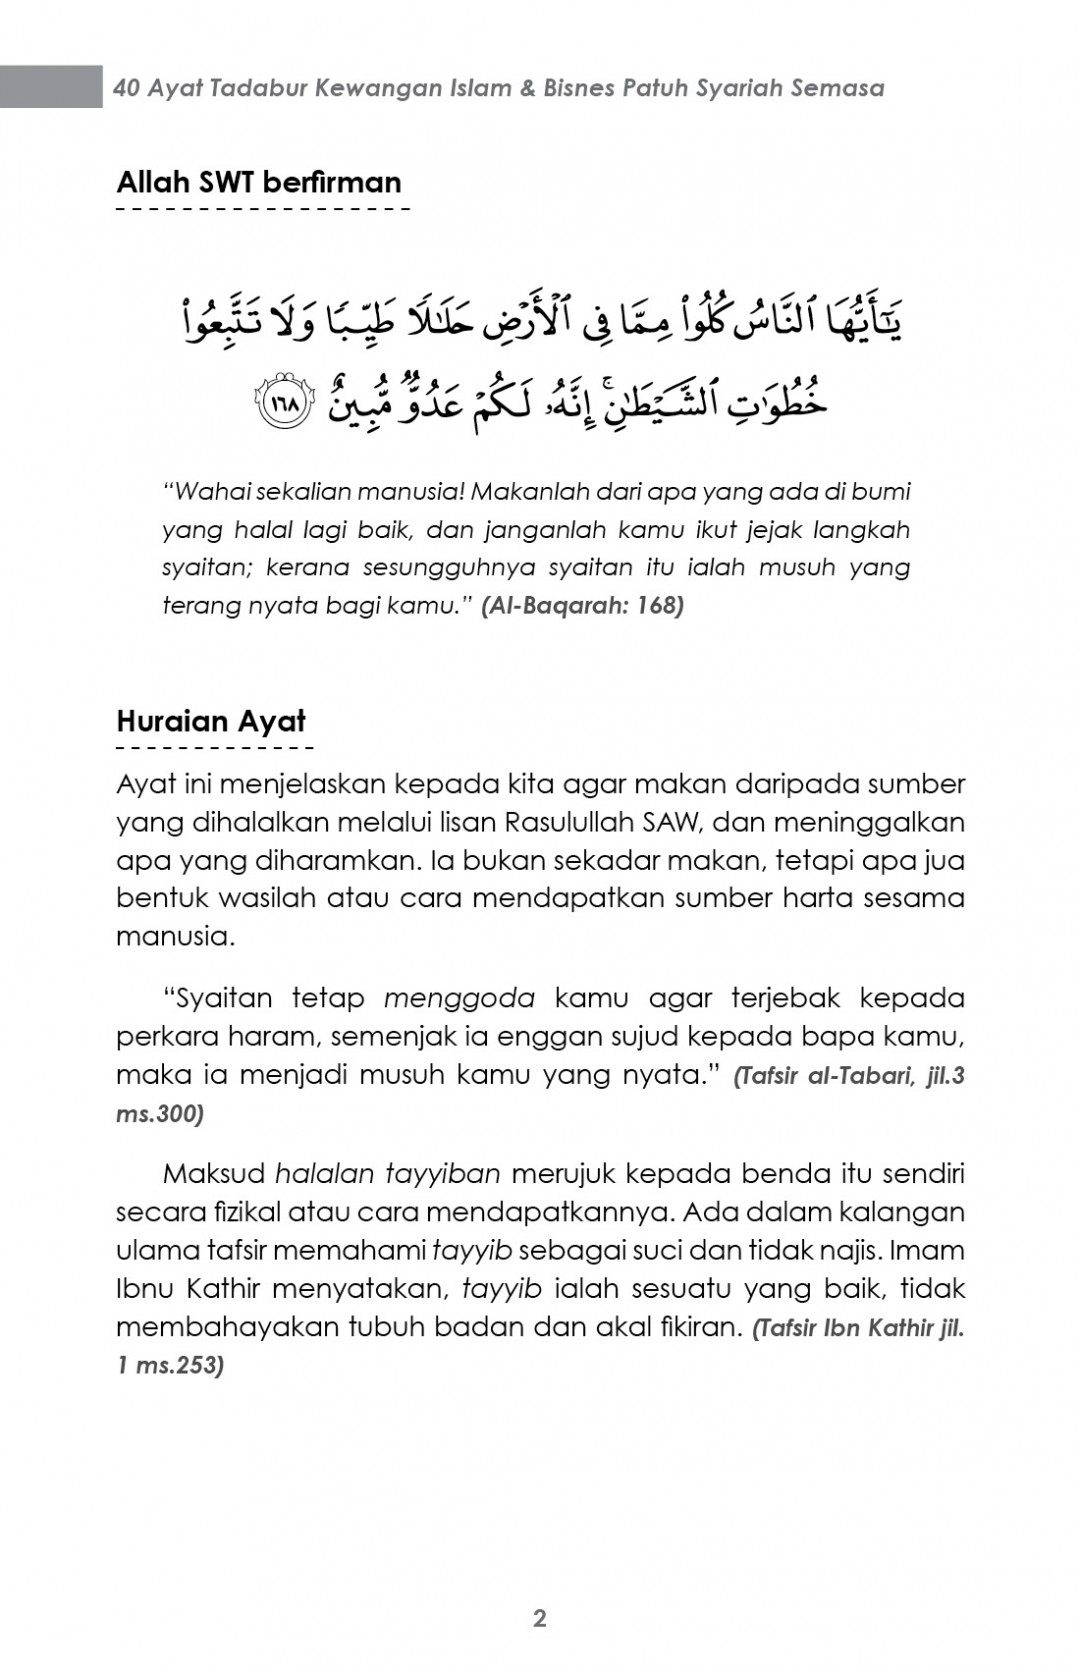 40 Ayat Tadabbur Kewangan Islam - Mustafar Mohd Suki